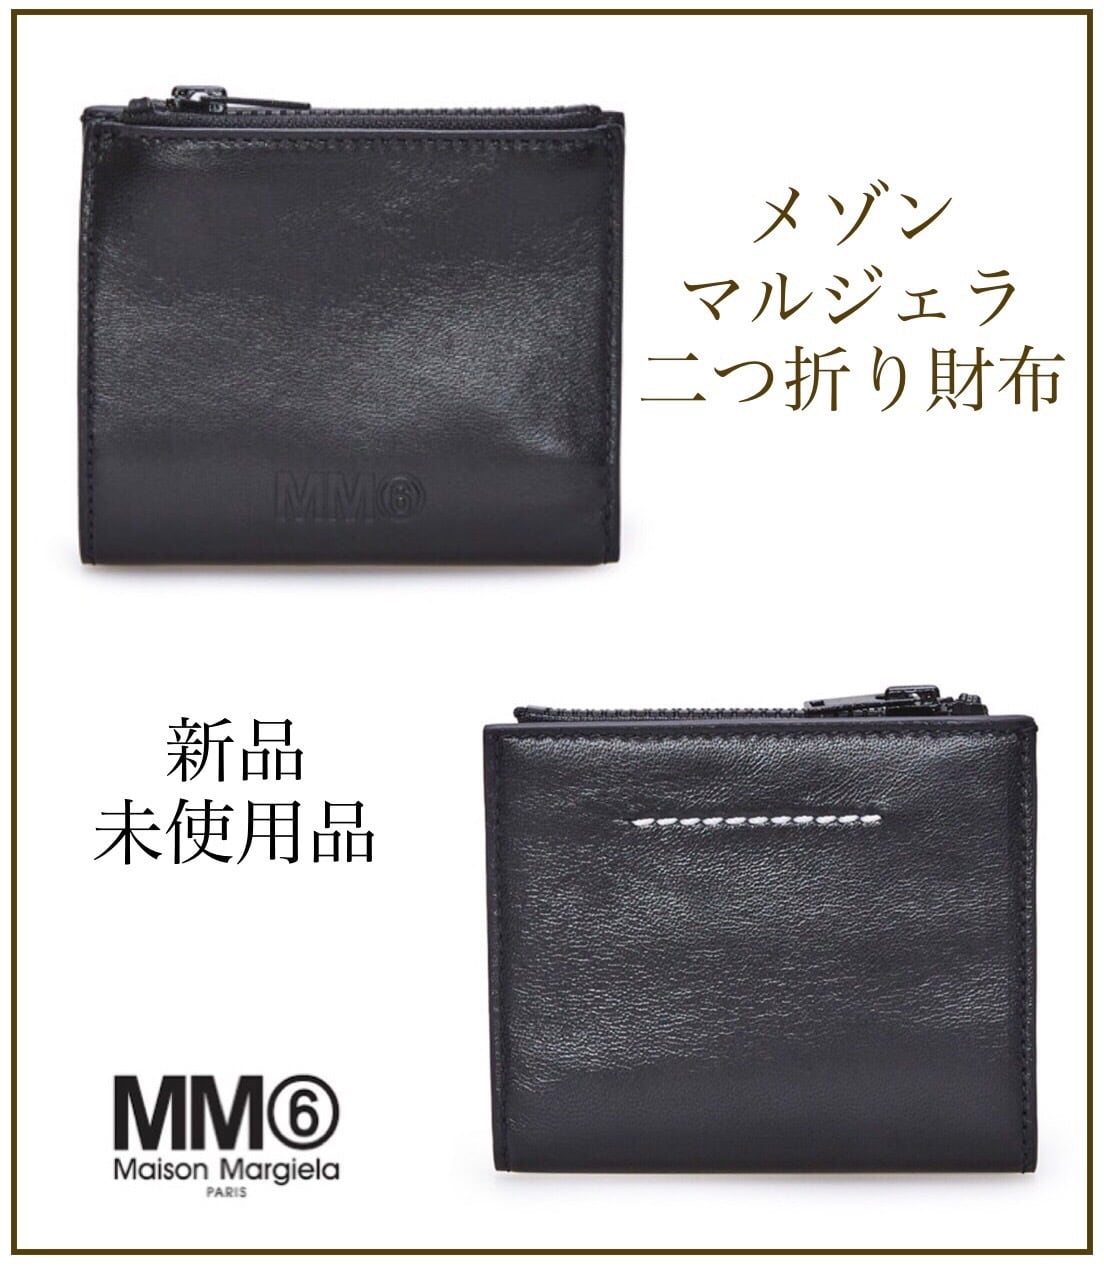 Maison Margiela（メゾンマルジェラ）MM6ロゴ二つ折り財布